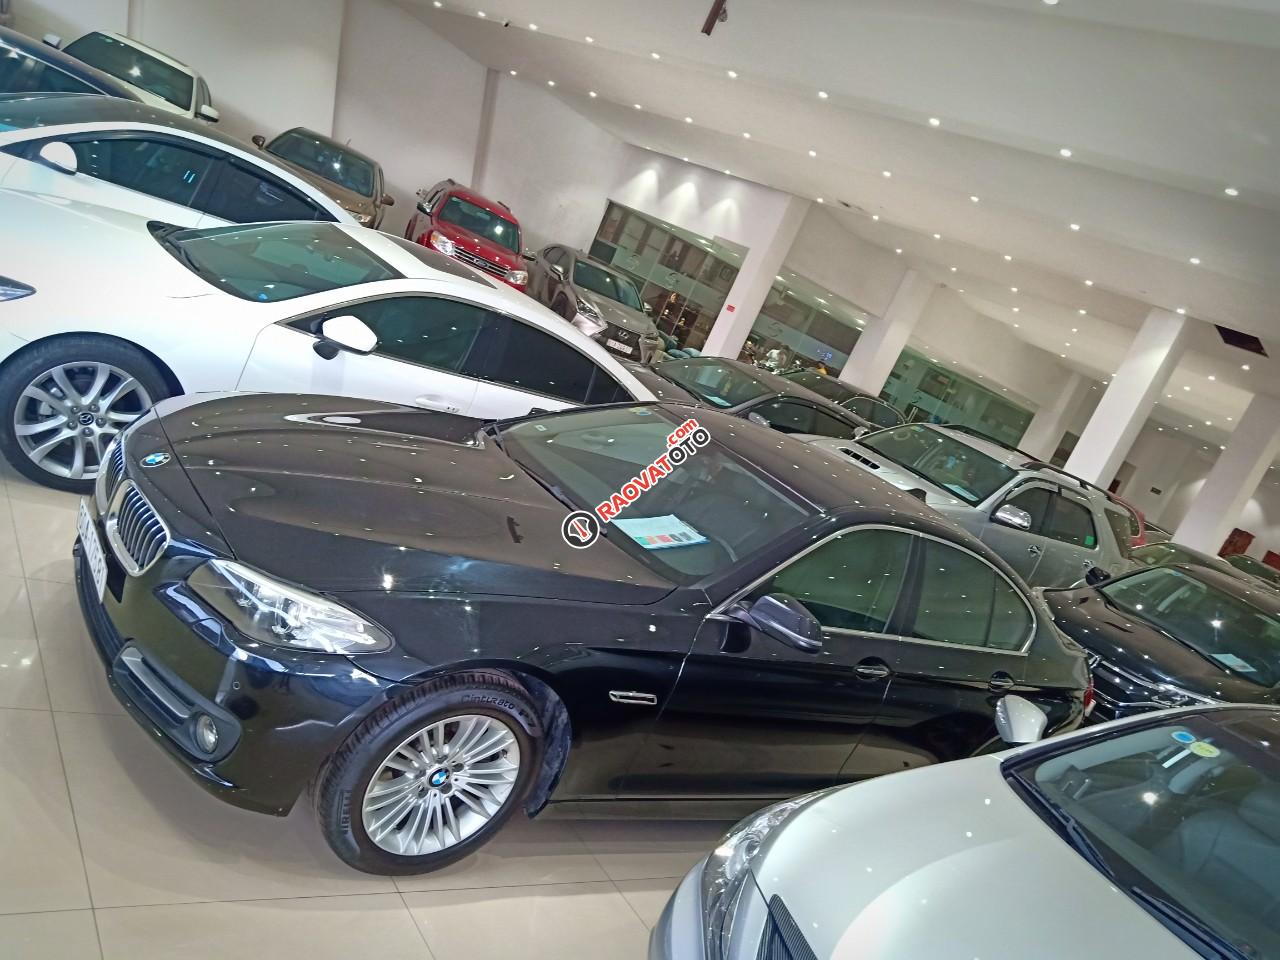 Cần bán BMW 520i đời 2014 2.0 AT xe nhập khẩu nguyên chiếc tại Đức, odo: 53.000 km, màu đen, xe đẹp-5